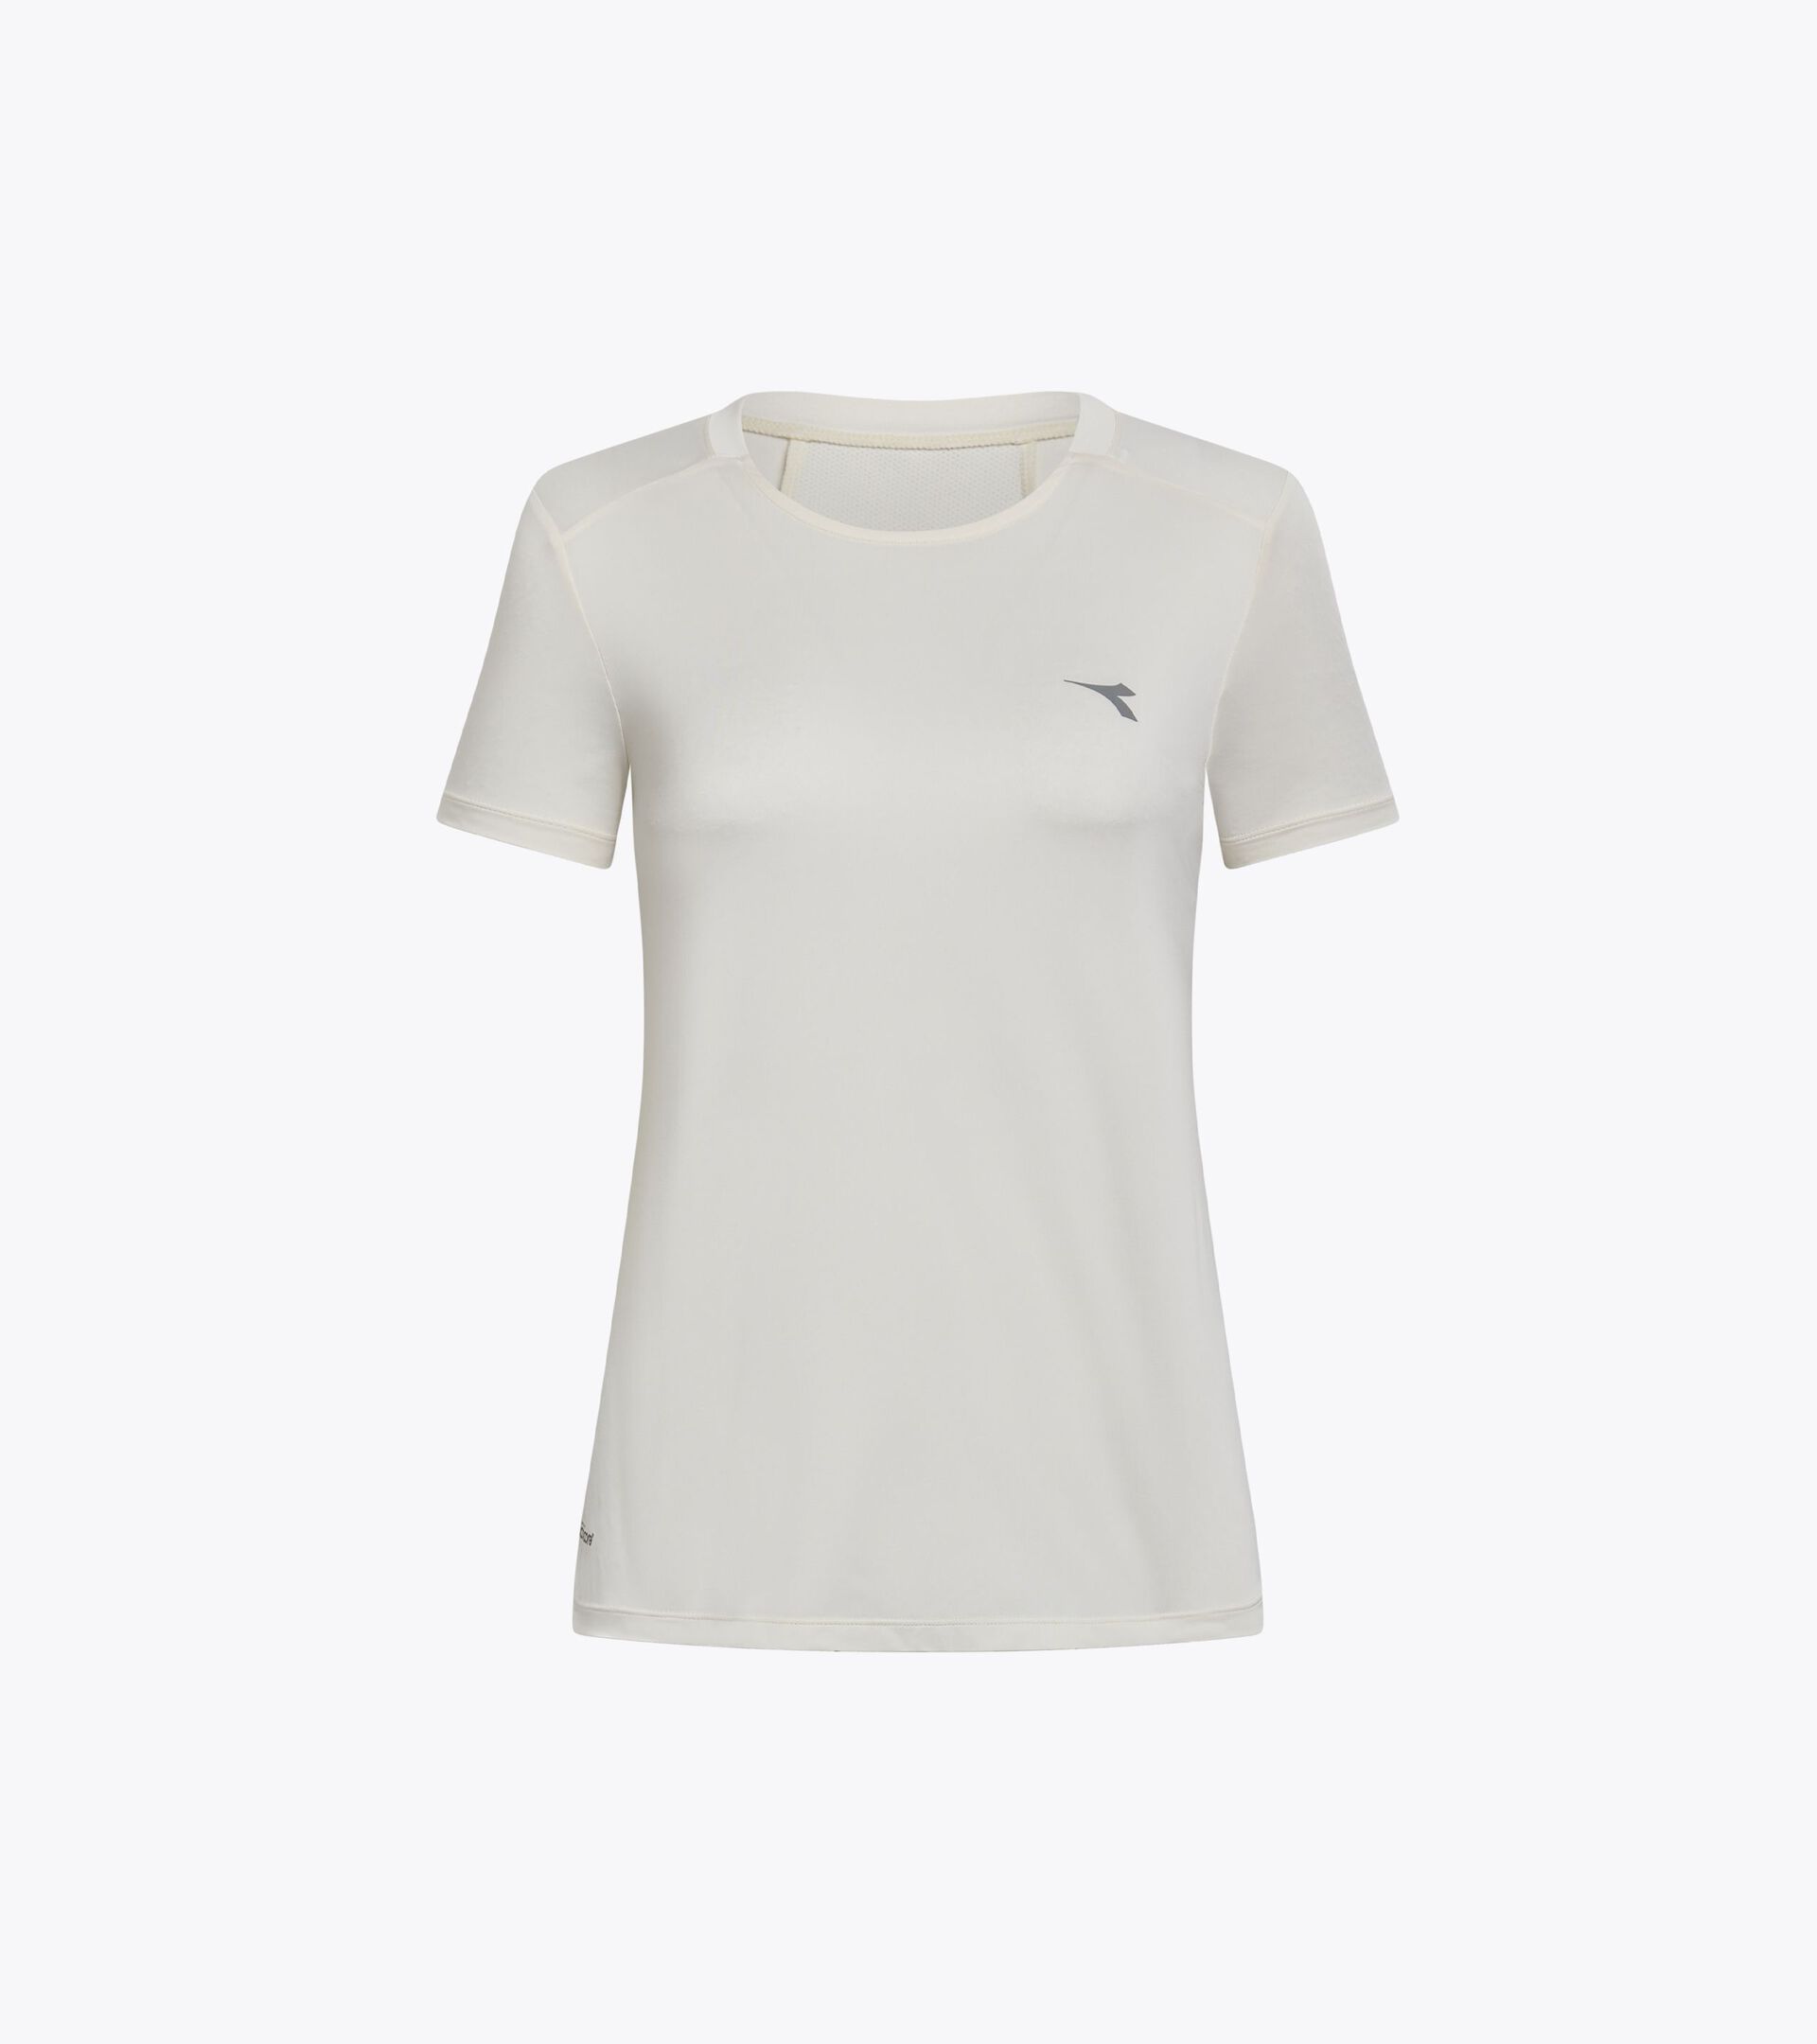 Running t-shirt - Light fabric - Women’s
 L. SUPER LIGHT SS T-SHIRT WHISPER WHITE - Diadora